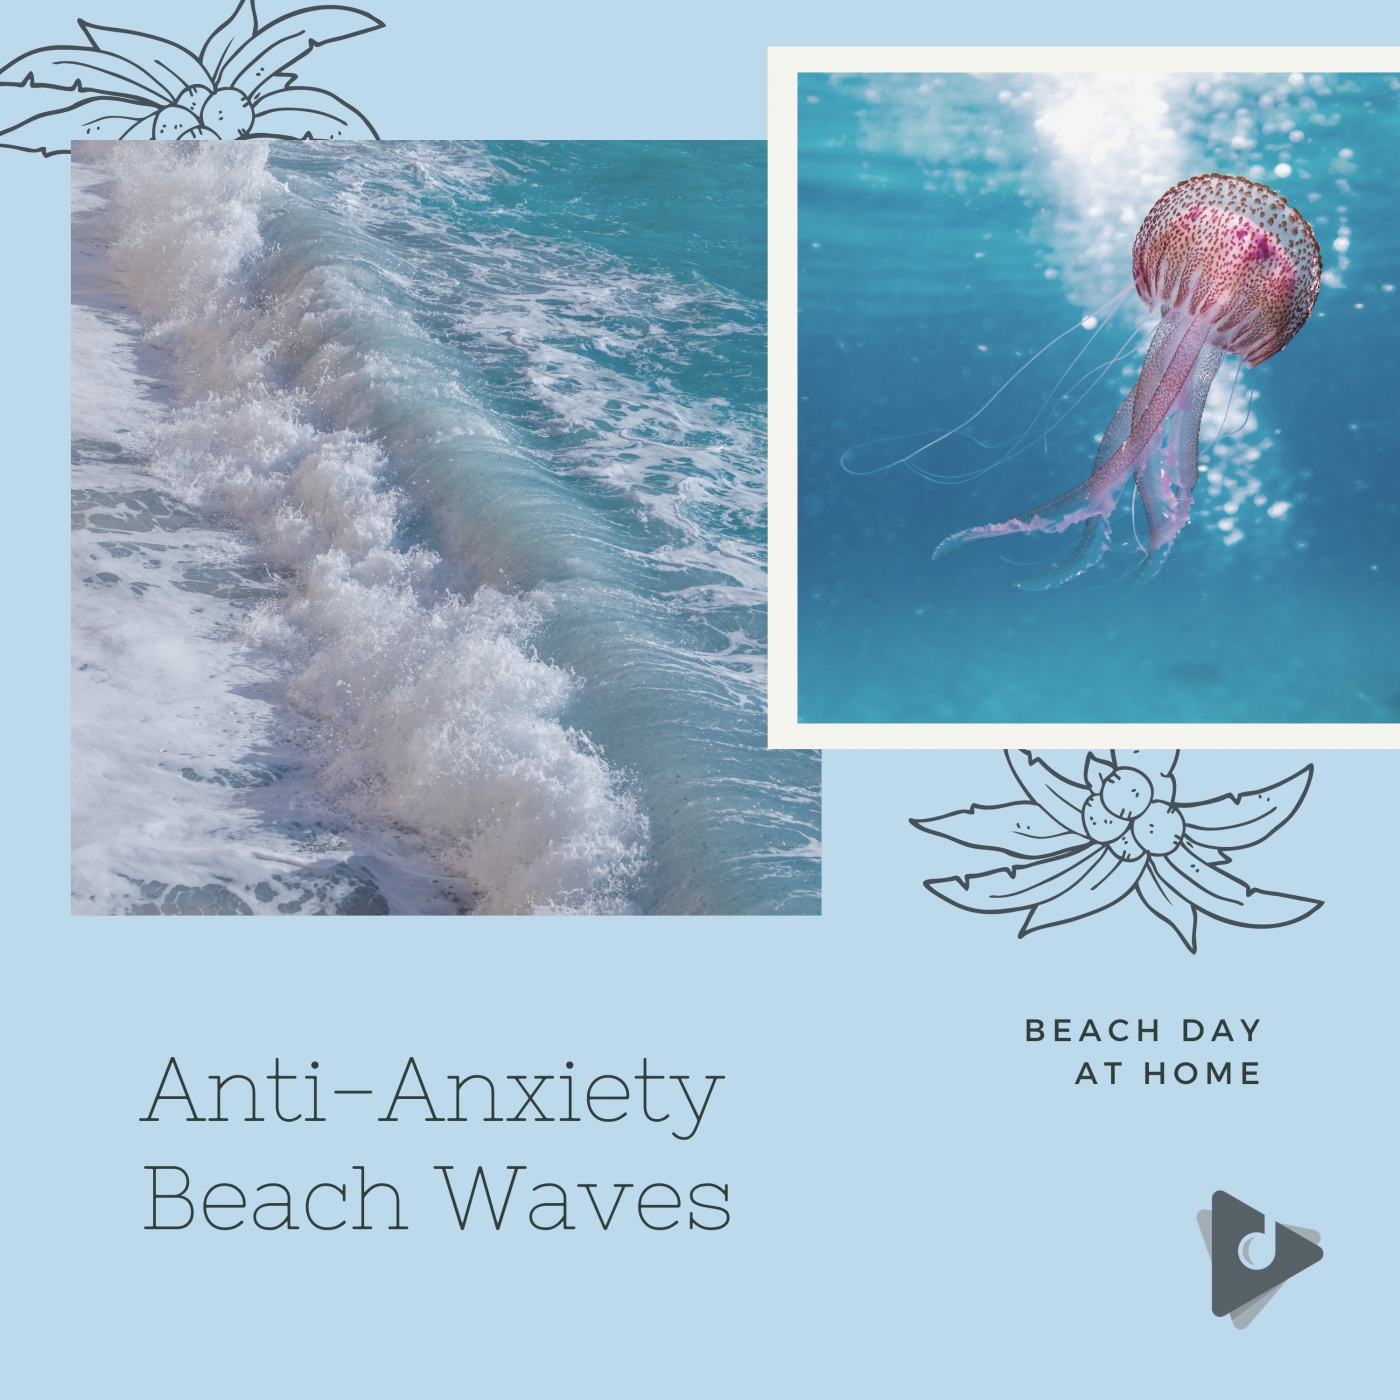 Anti-Anxiety Beach Waves